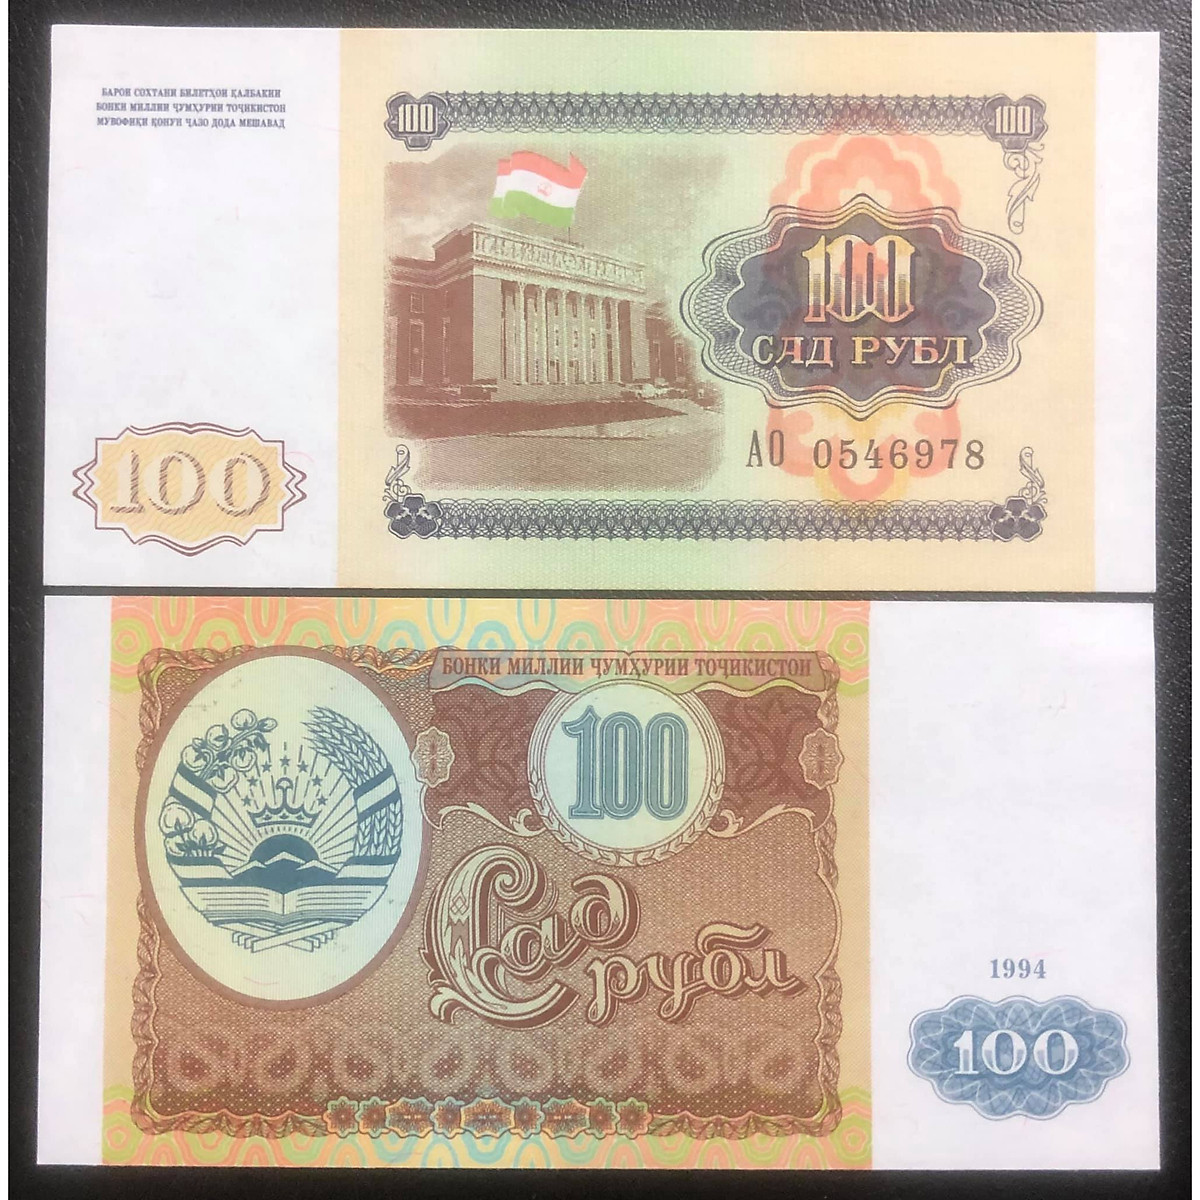 Tiền của Tajikistan 100 rubles, quốc gia ở Trung Á